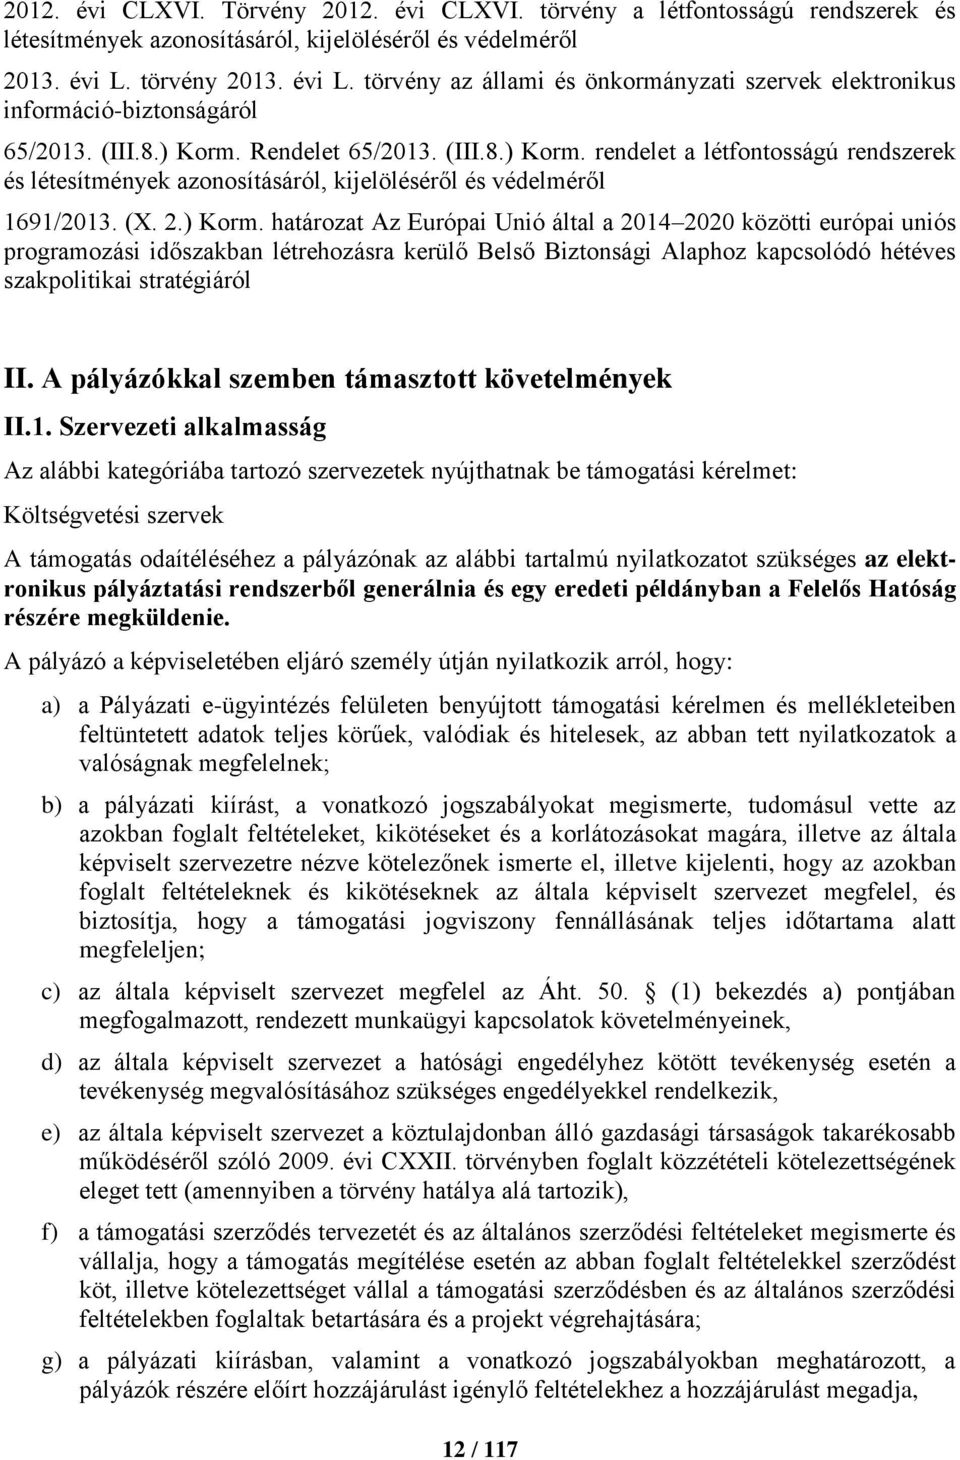 Rendelet 65/2013. (III.8.) Korm.